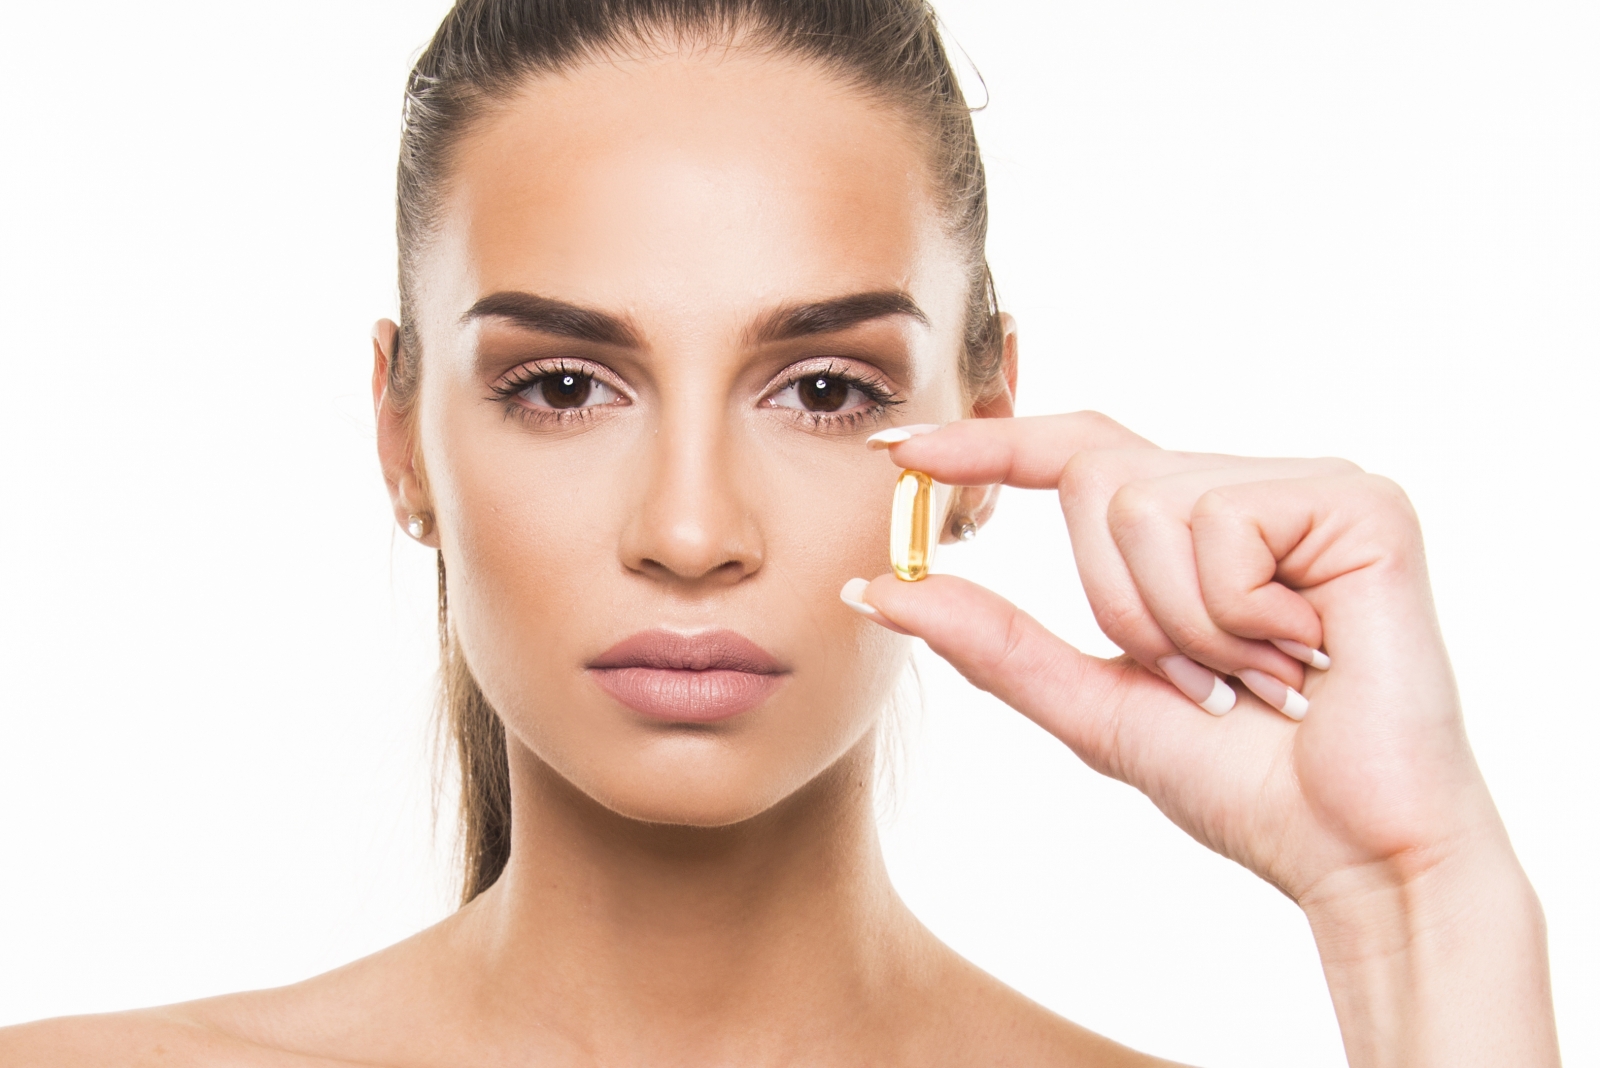 Collagen Golden Health Beauty Shots của Úc có hiệu quả không?
